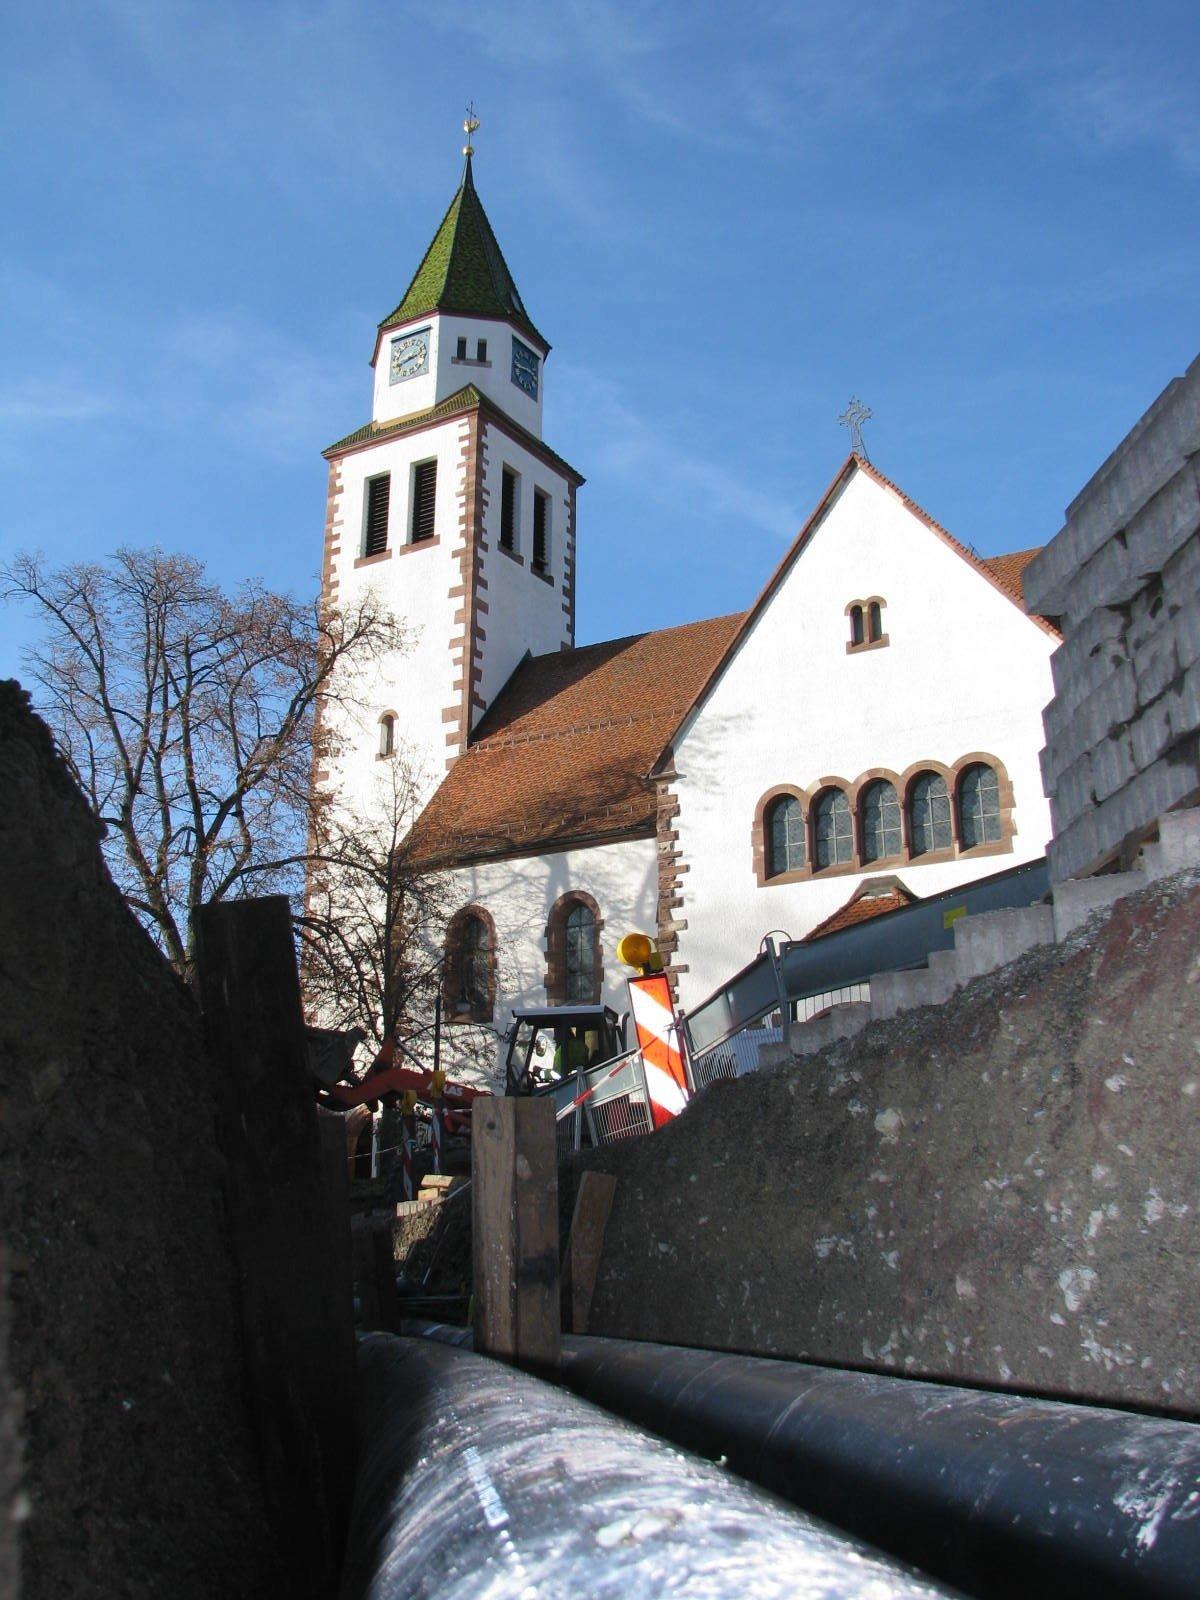 Verlegung einer Wärmeleitung. Im Hintergrund ist eine Kirche zu sehen